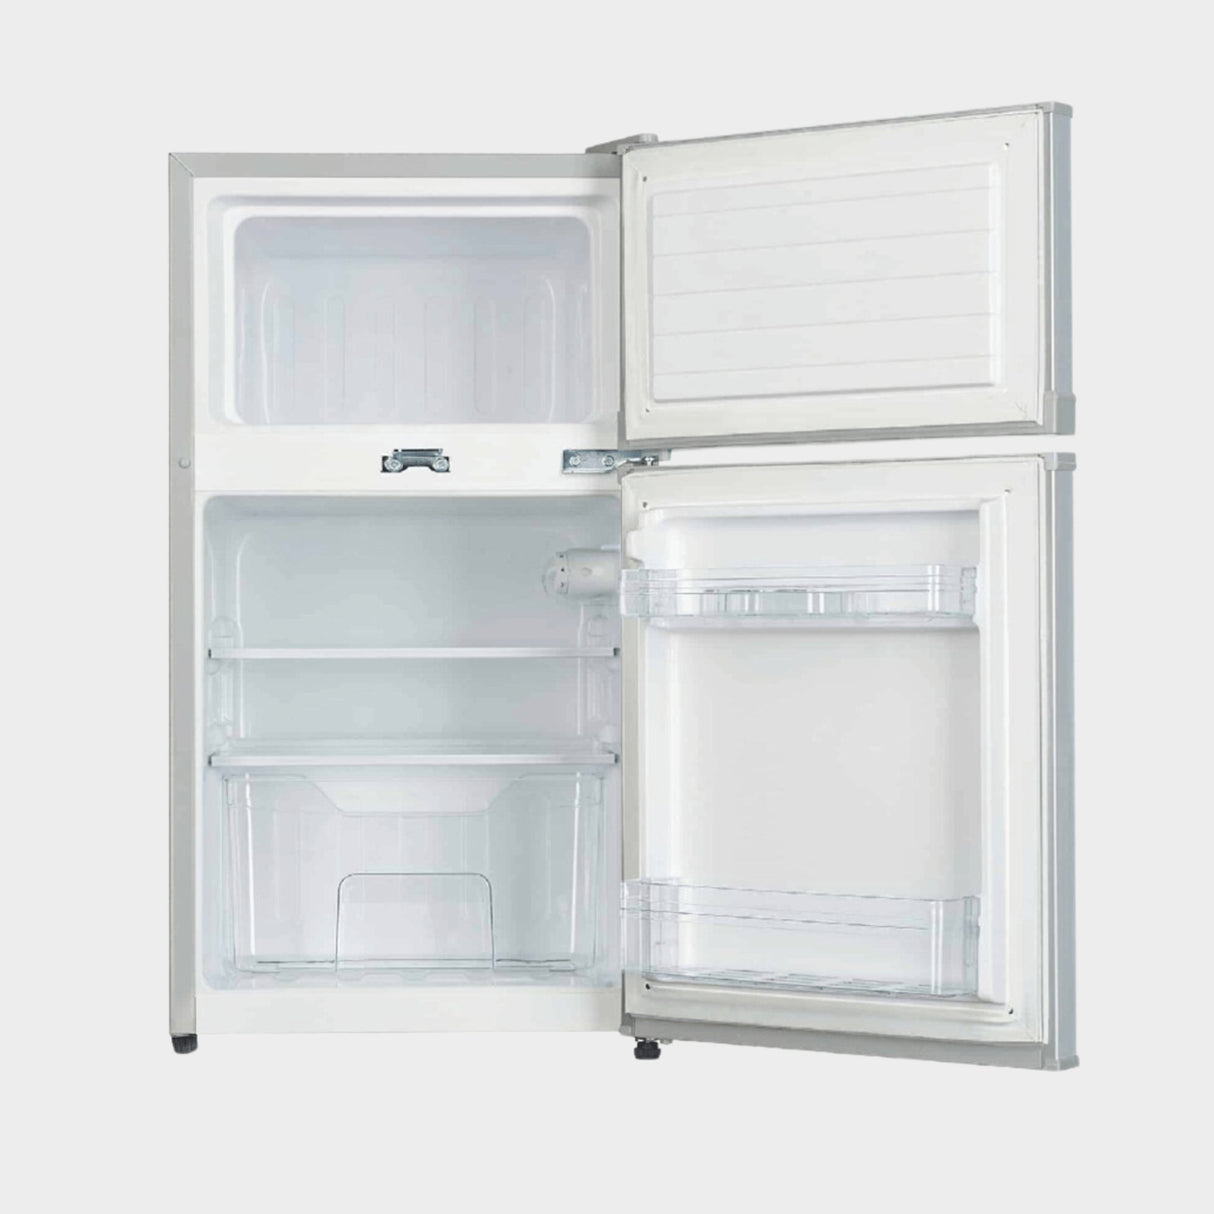 ADH 130 Liters Double Door Refrigerator – Silver - KWT Tech Mart